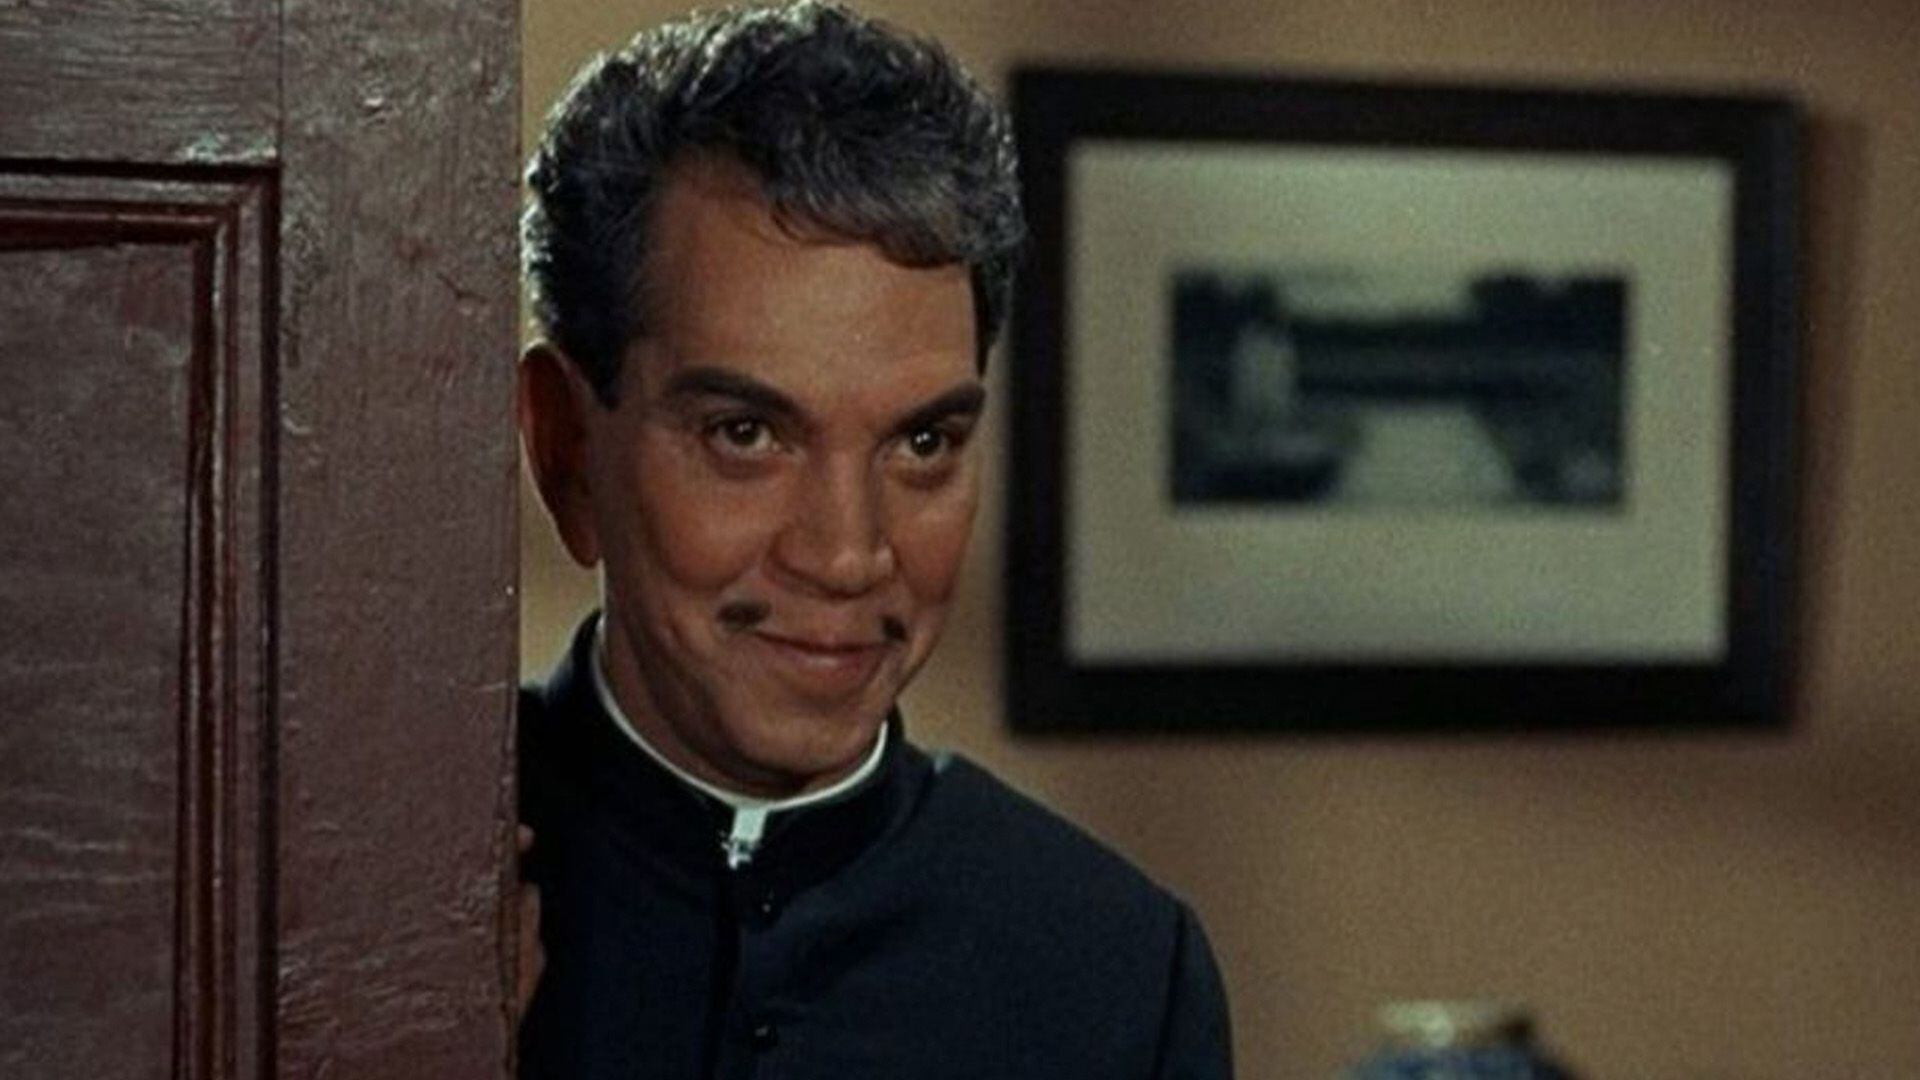 El actor mexicano Mario Moreno generó controversia con la película, pues aunque él aseguró que promovía el catolicismo otros aseguraron que se burlaba de la fe.Cantinflas